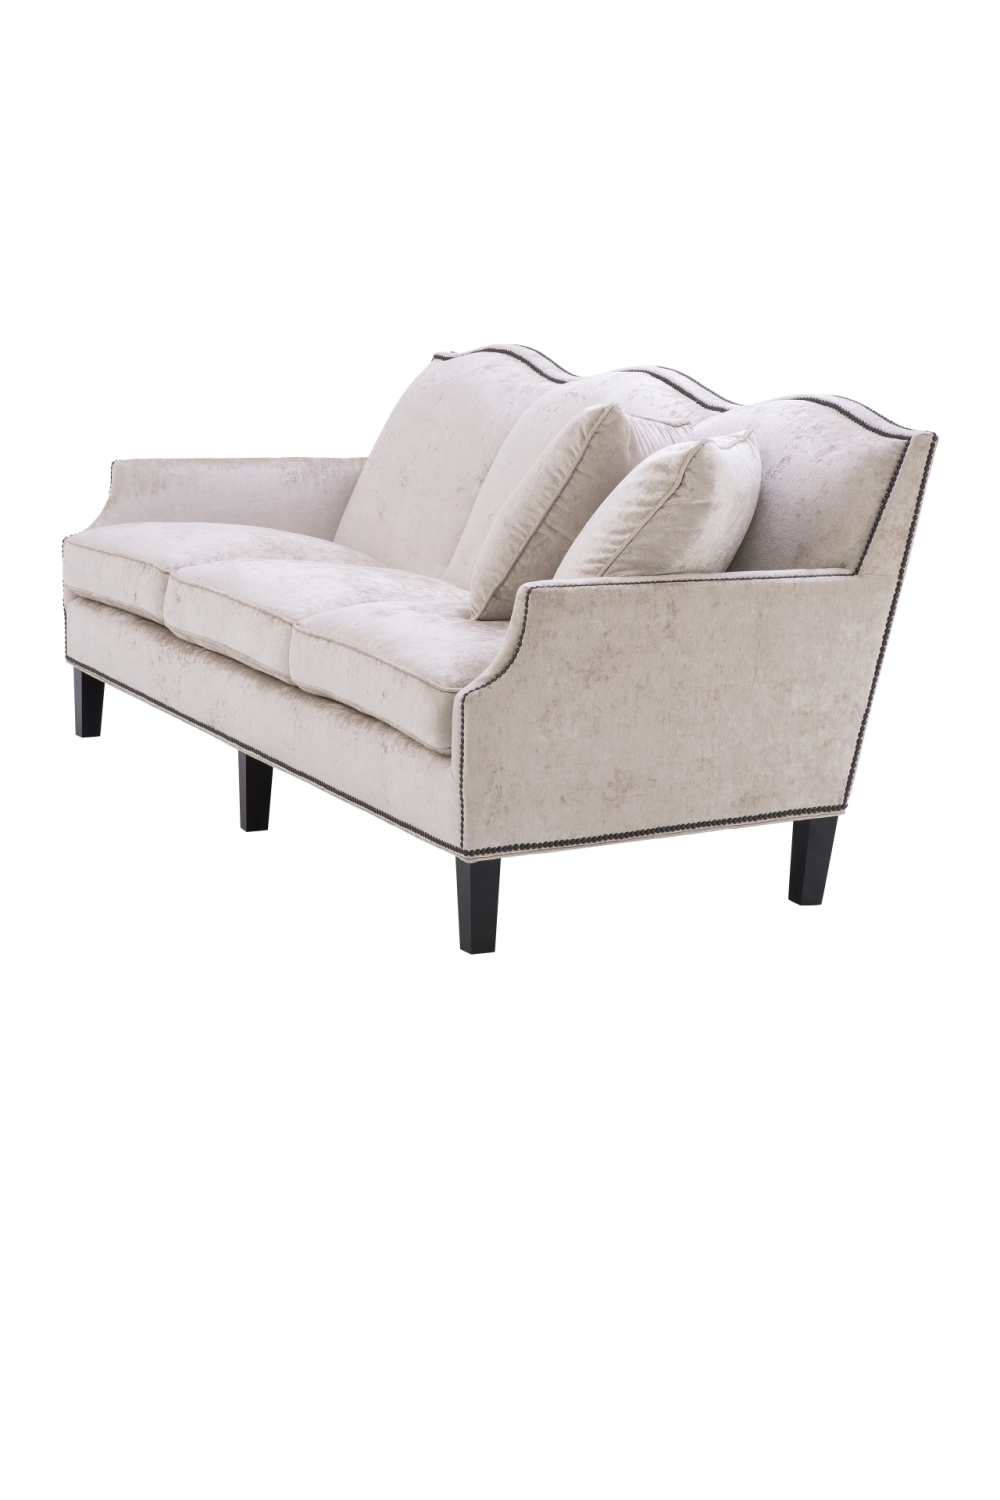 Off-White Studded Trim Sofa | Eichholtz Merlin | Oroa.com